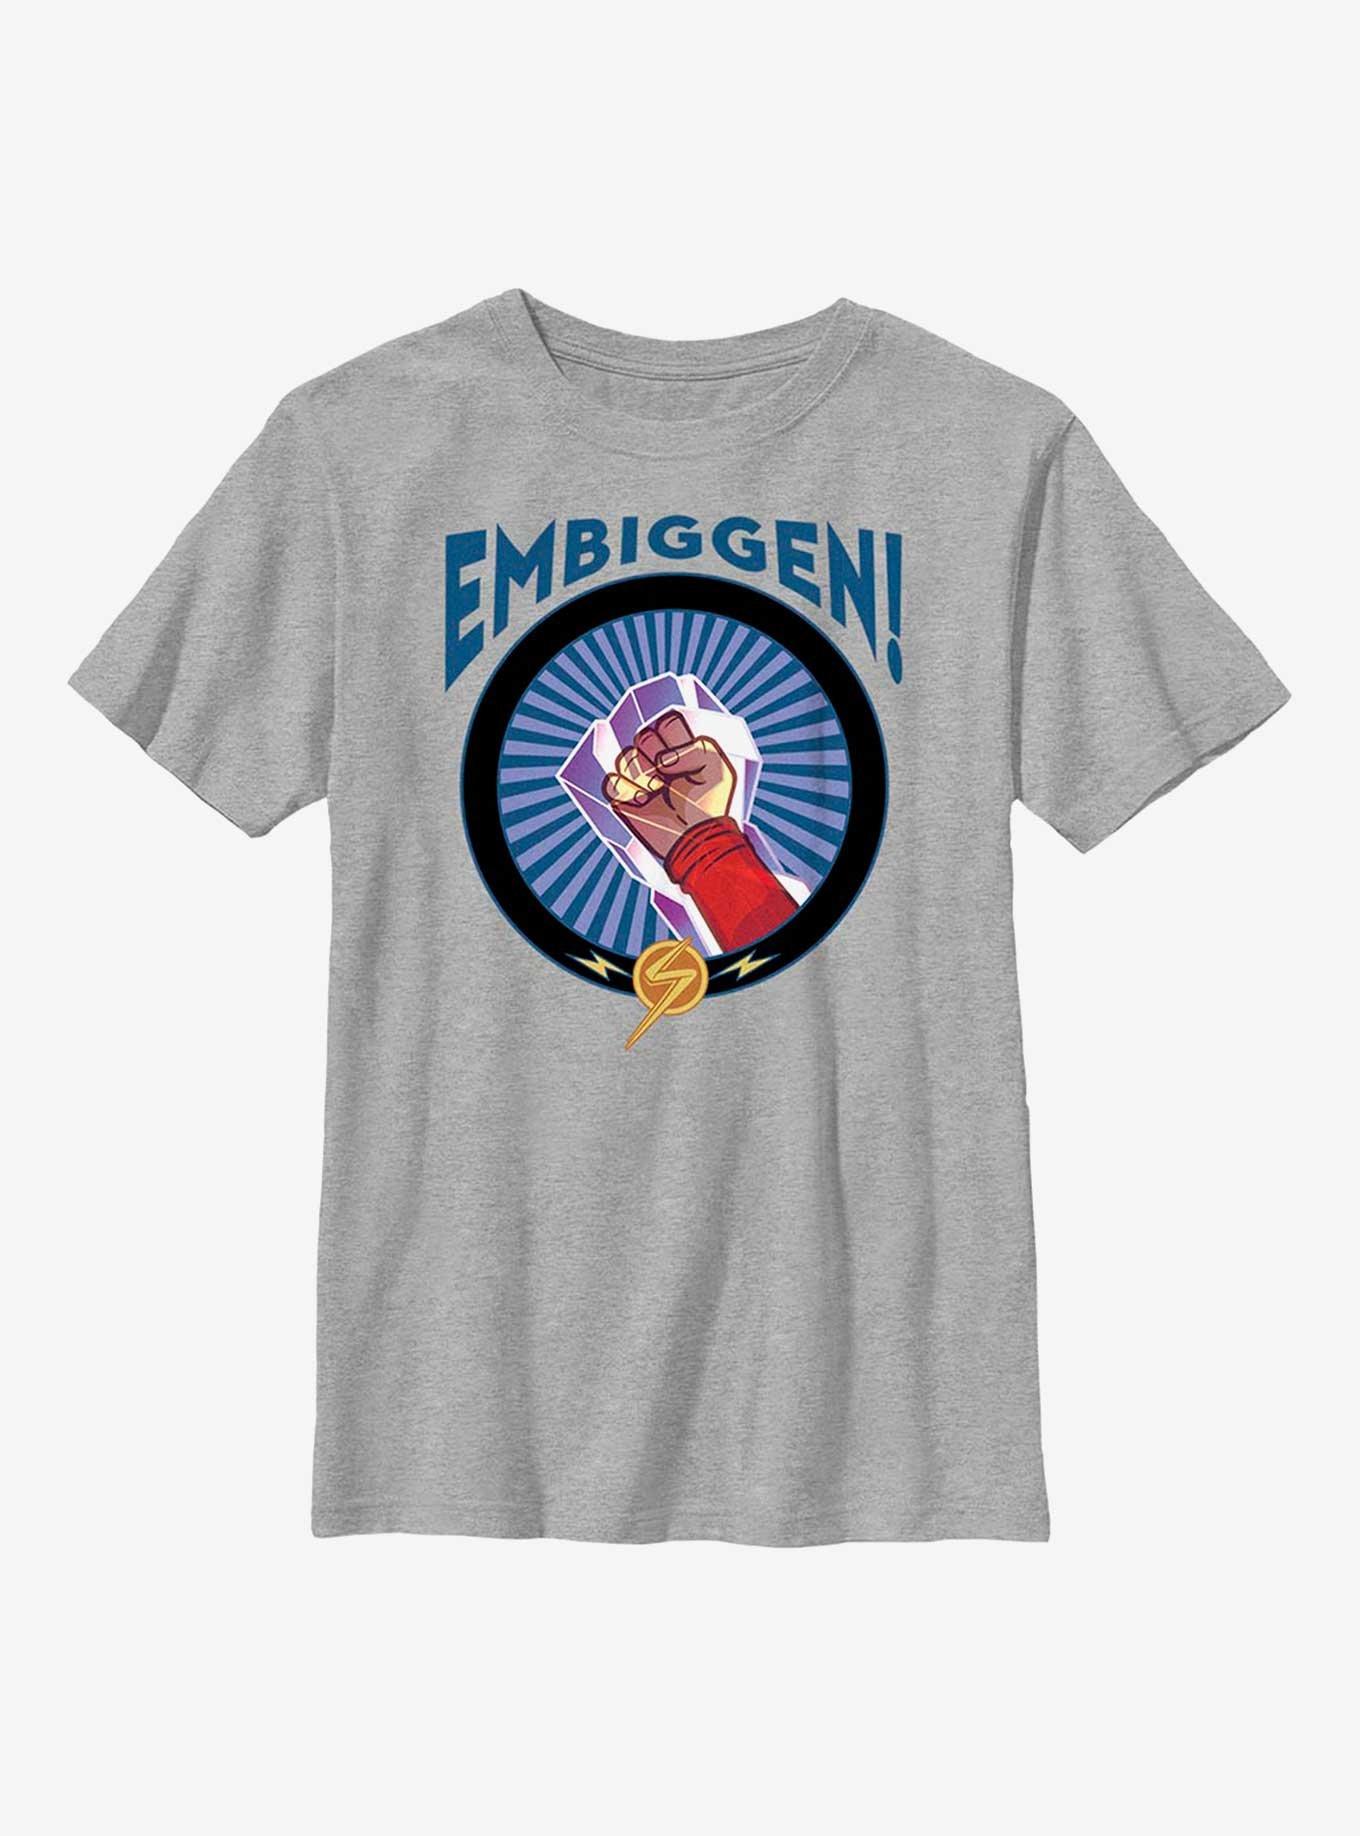 Marvel Ms. Marvel Embiggen! Youth T-Shirt, ATH HTR, hi-res